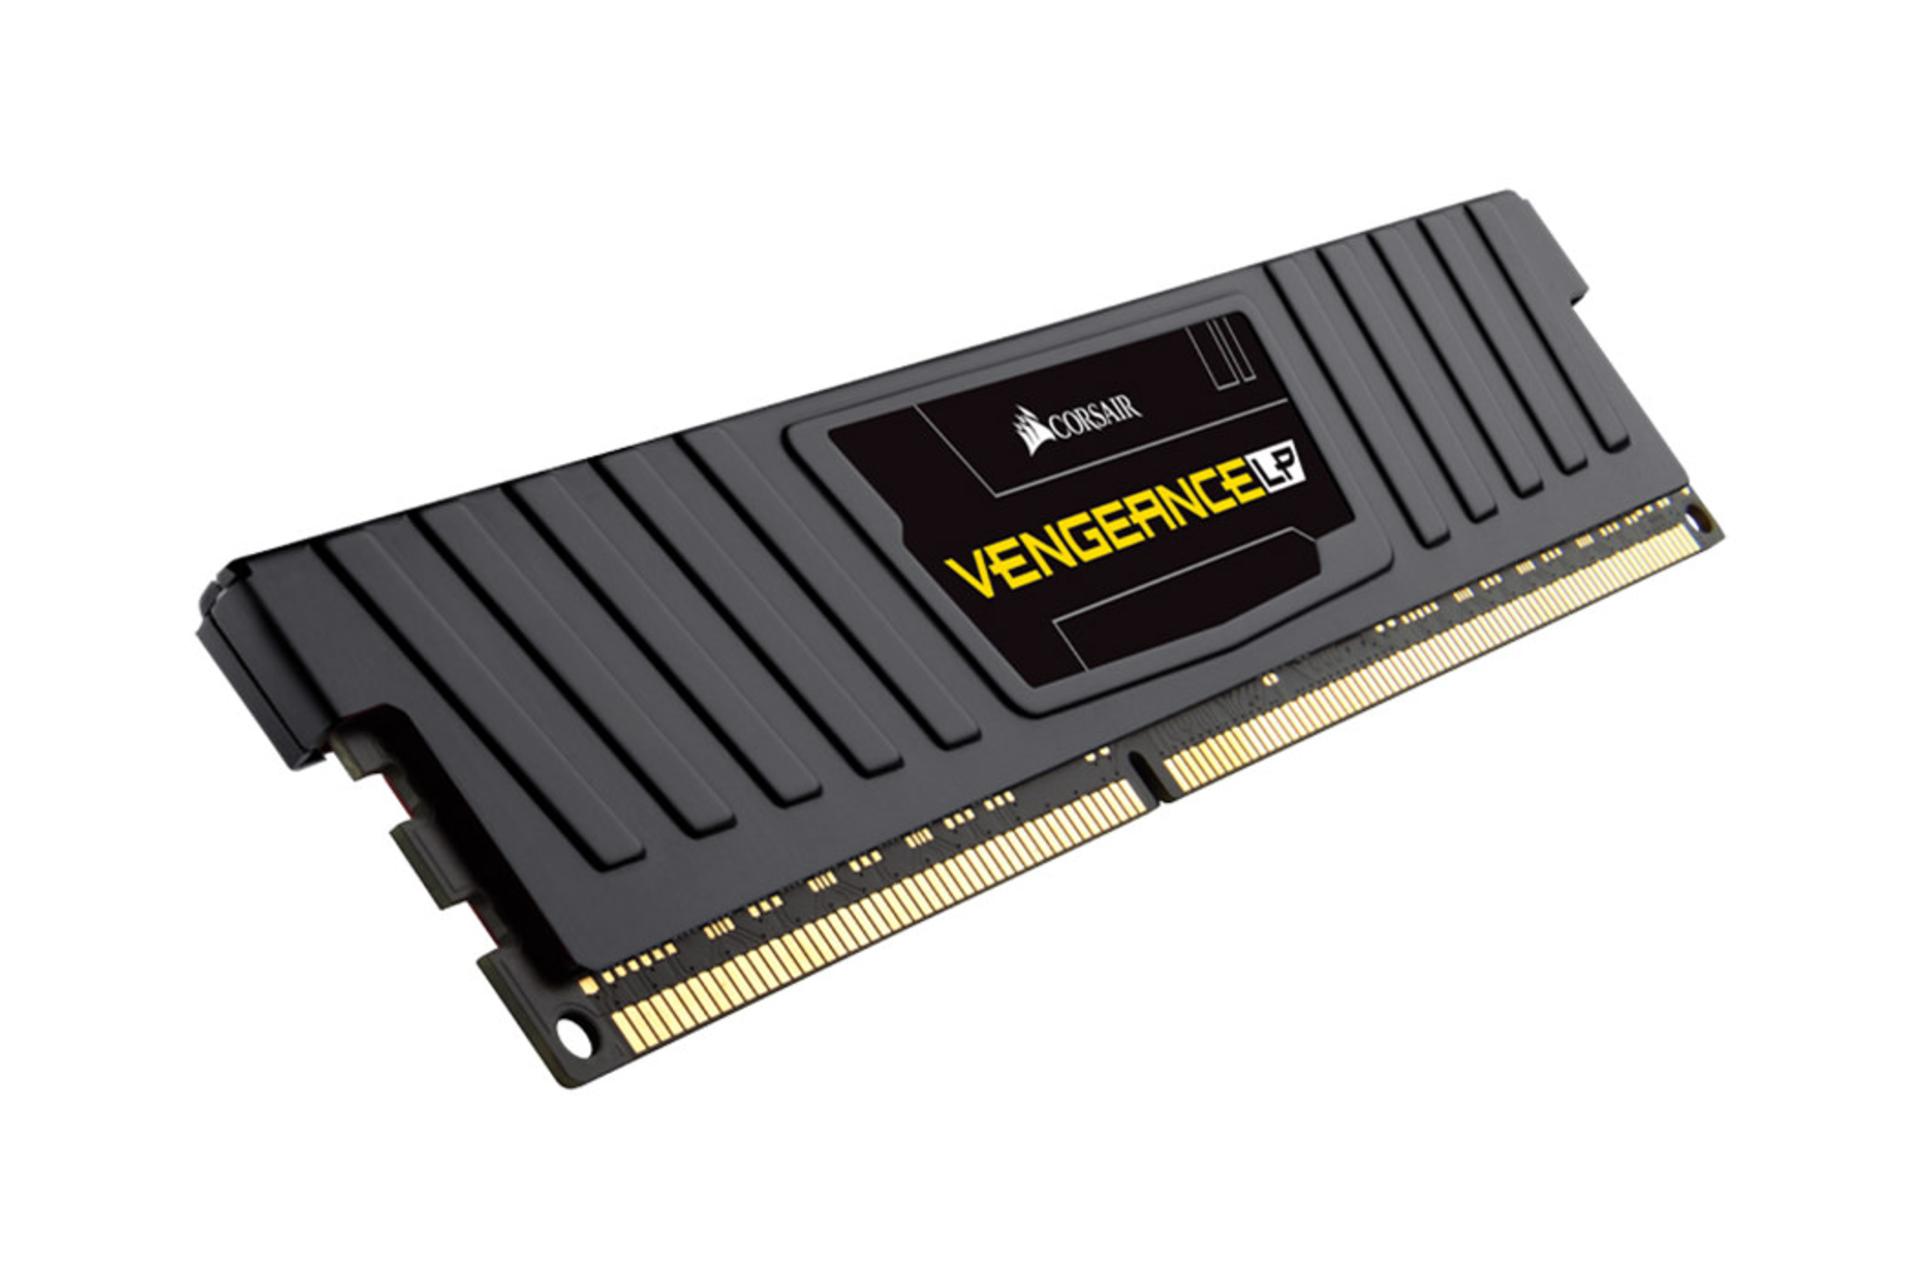 حافظه رم کورسیر VENGEANCE LP ظرفیت 4 گیگابایت از نوع DDR3-1600 نمای جانبی